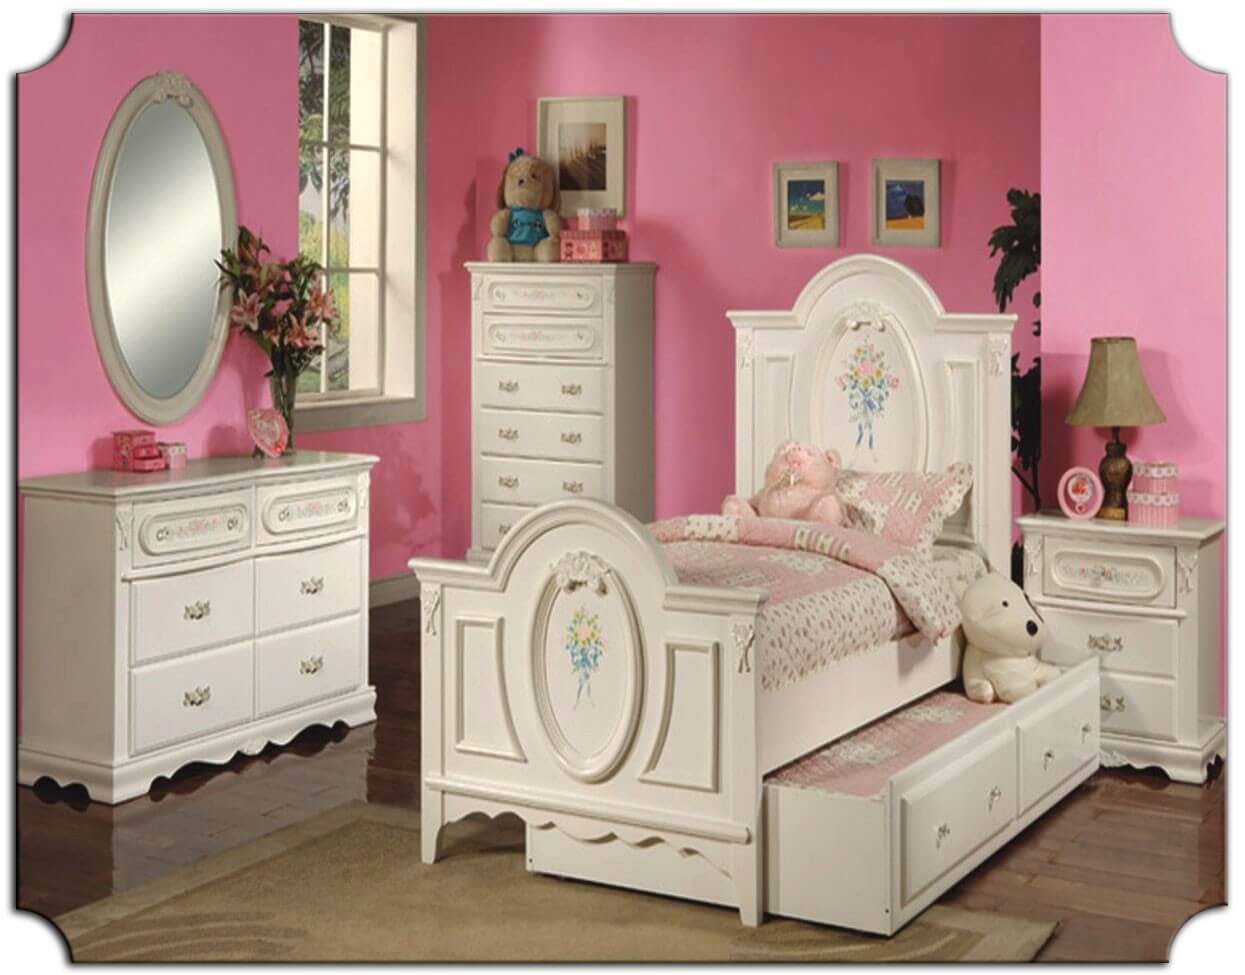 Bedroom Sets For Kids
 The Best Kids Bedroom Furniture Sets Best Interior Decor